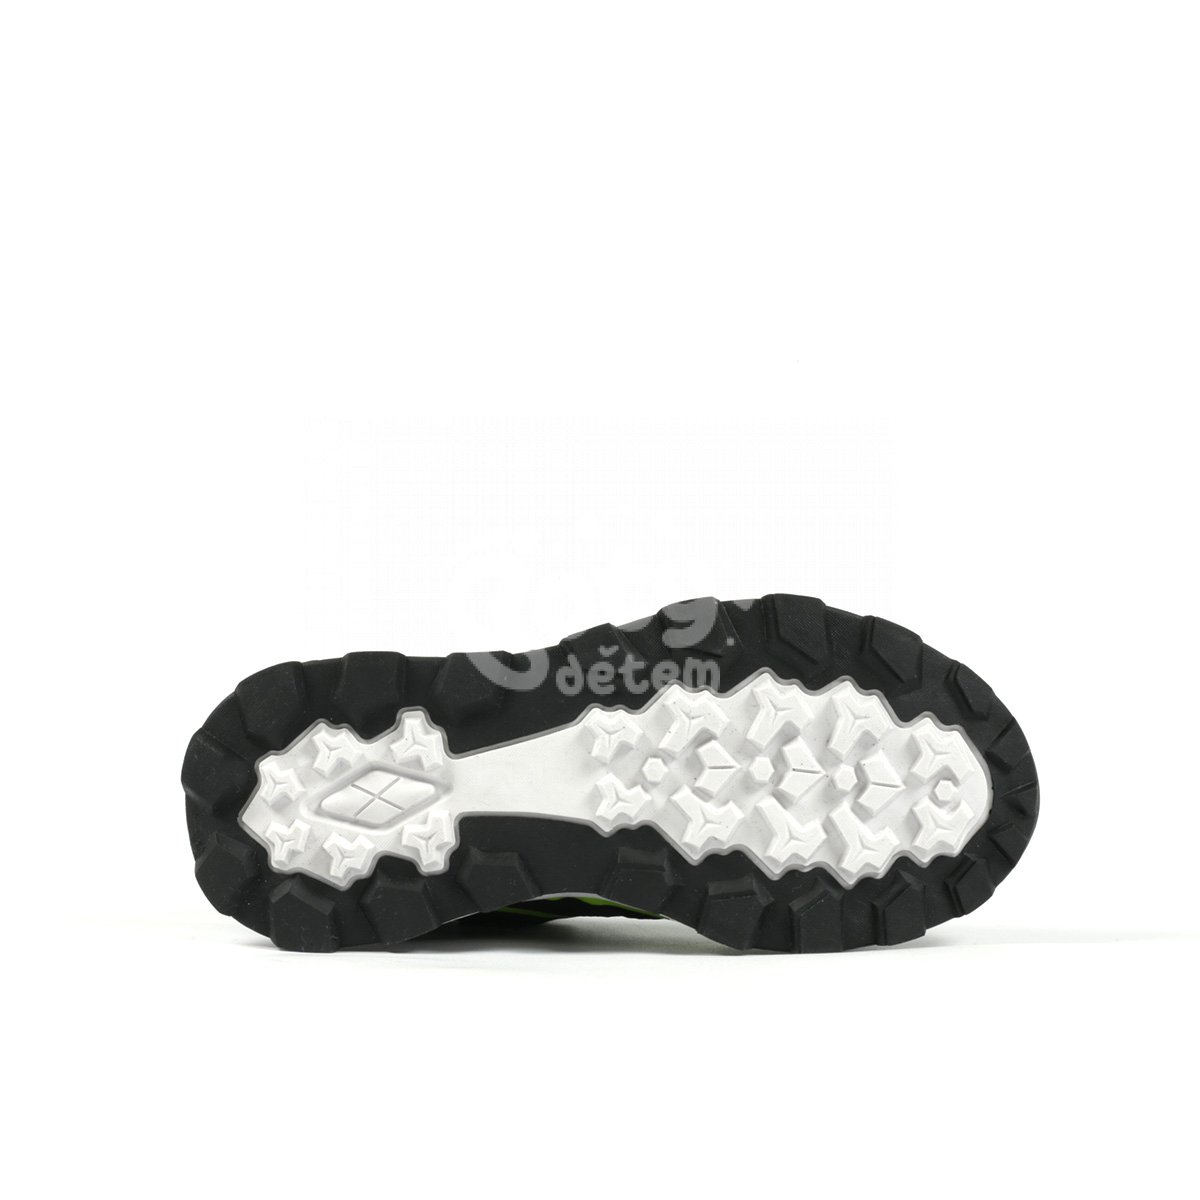 Sportovní obuv Richter Venture 7454-6192-9901 černá